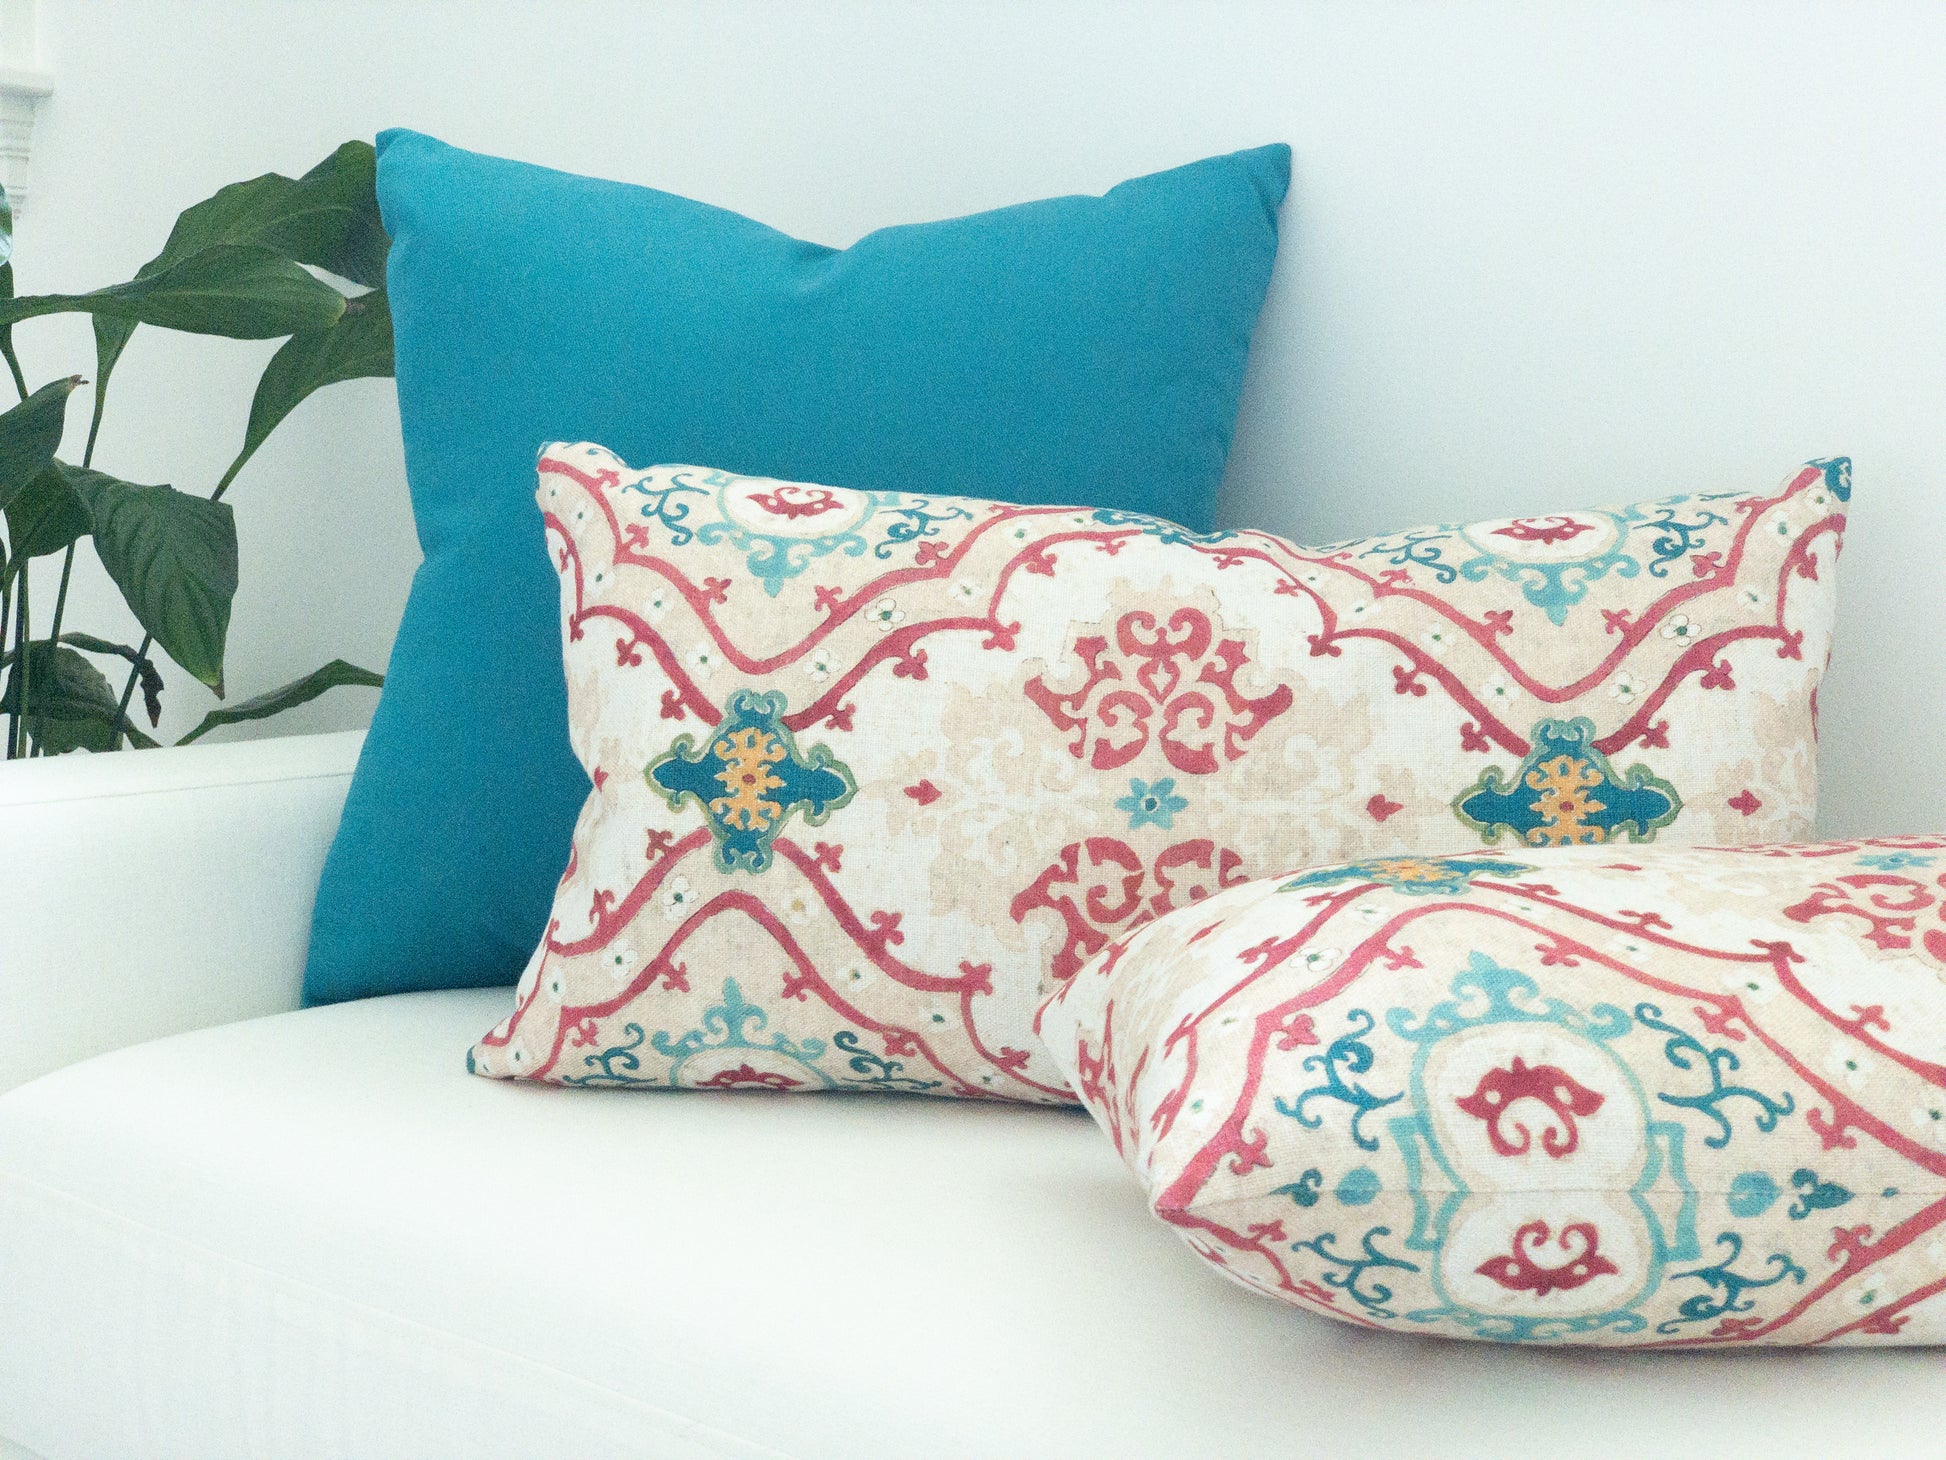 Peacock blue solid pillow with ikat lumbar pillows